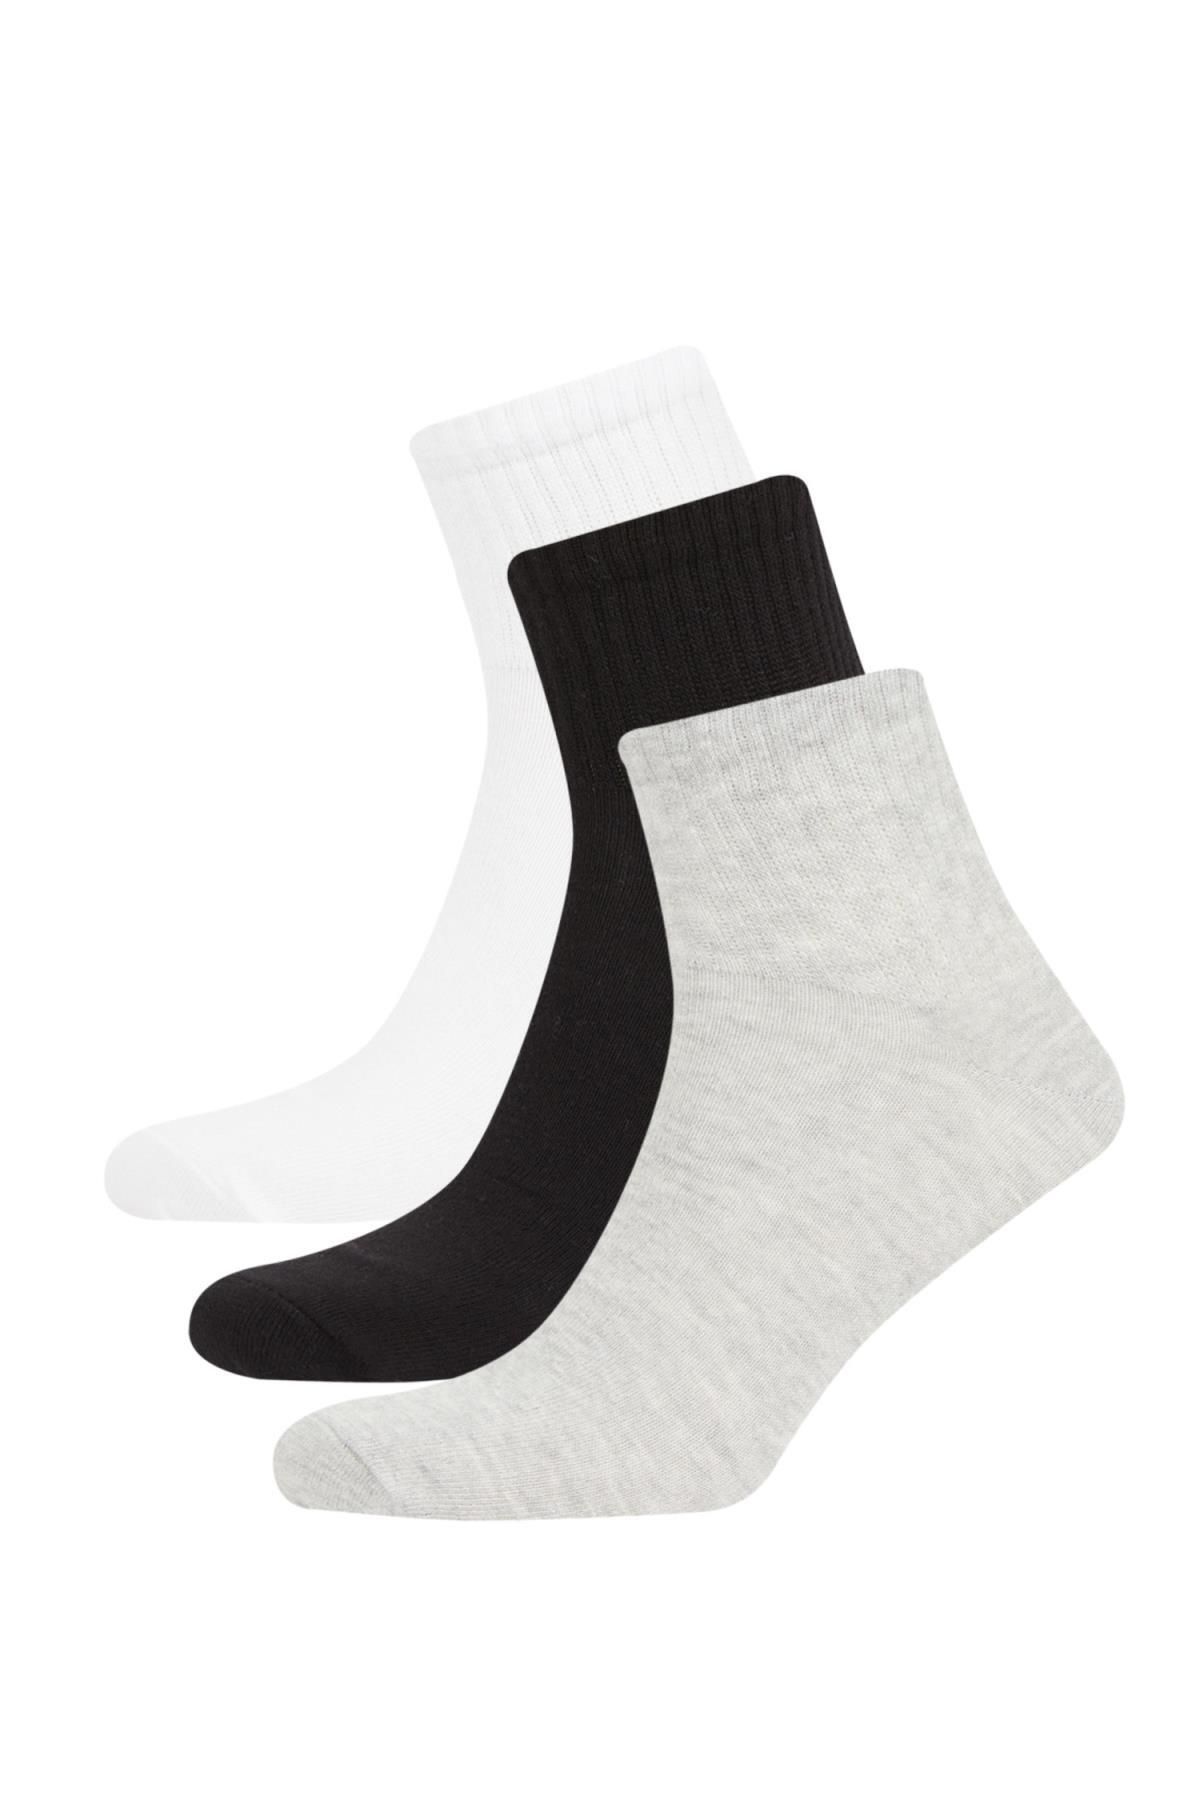 Defacto Erkek 3'lü Pamuklu Patik Çorap C0162axns